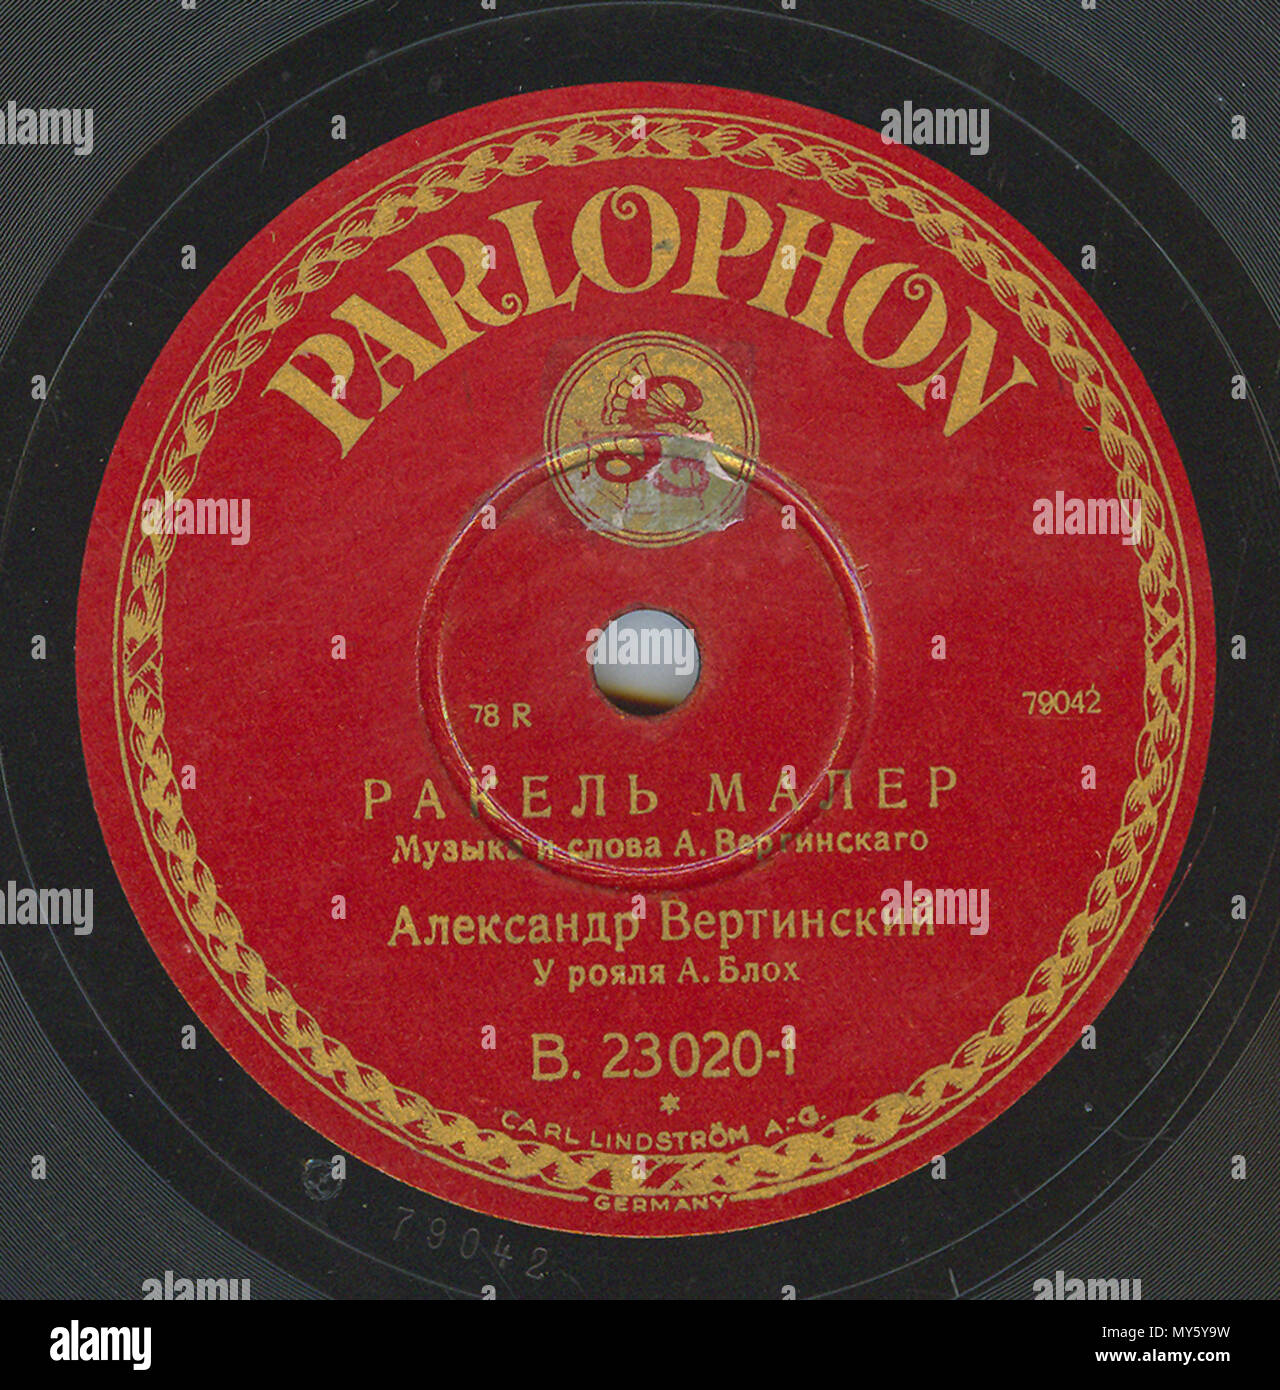 . Englisch: Vertinsky Parlophone B. 23020 01. 6. April 2010, 12:00:21. Parlophone 548 Vertinsky Parlophone B. 23020, 01. Stockfoto